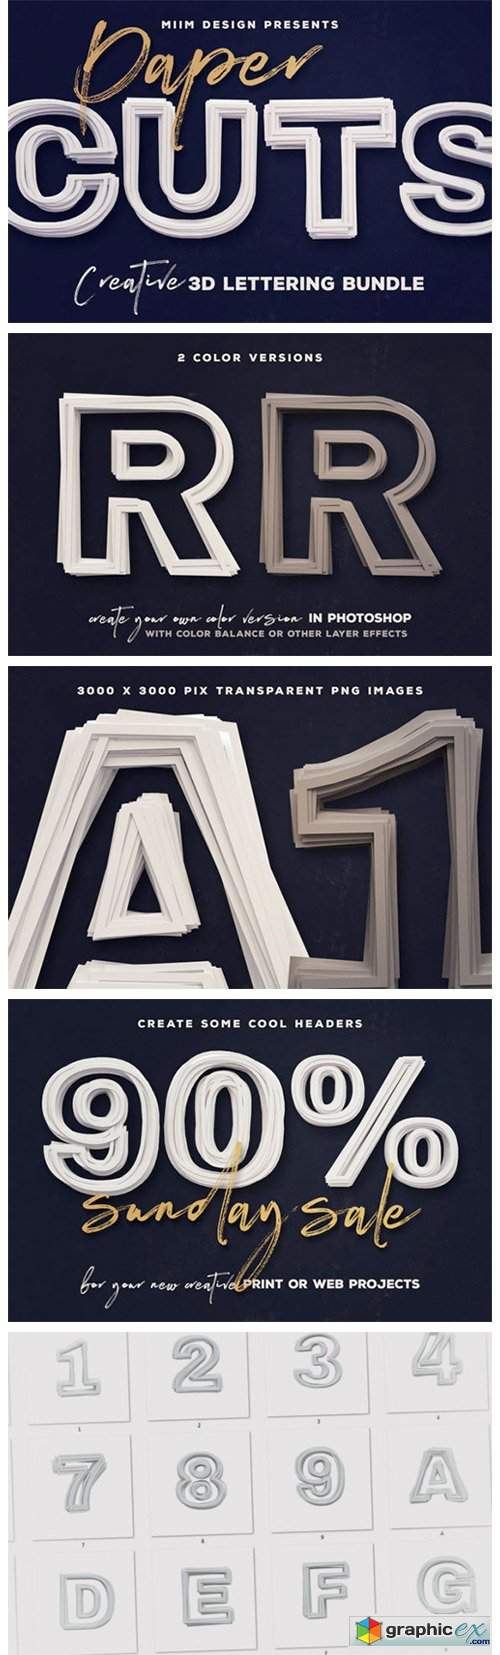  Paper Cut – 3D Lettering 